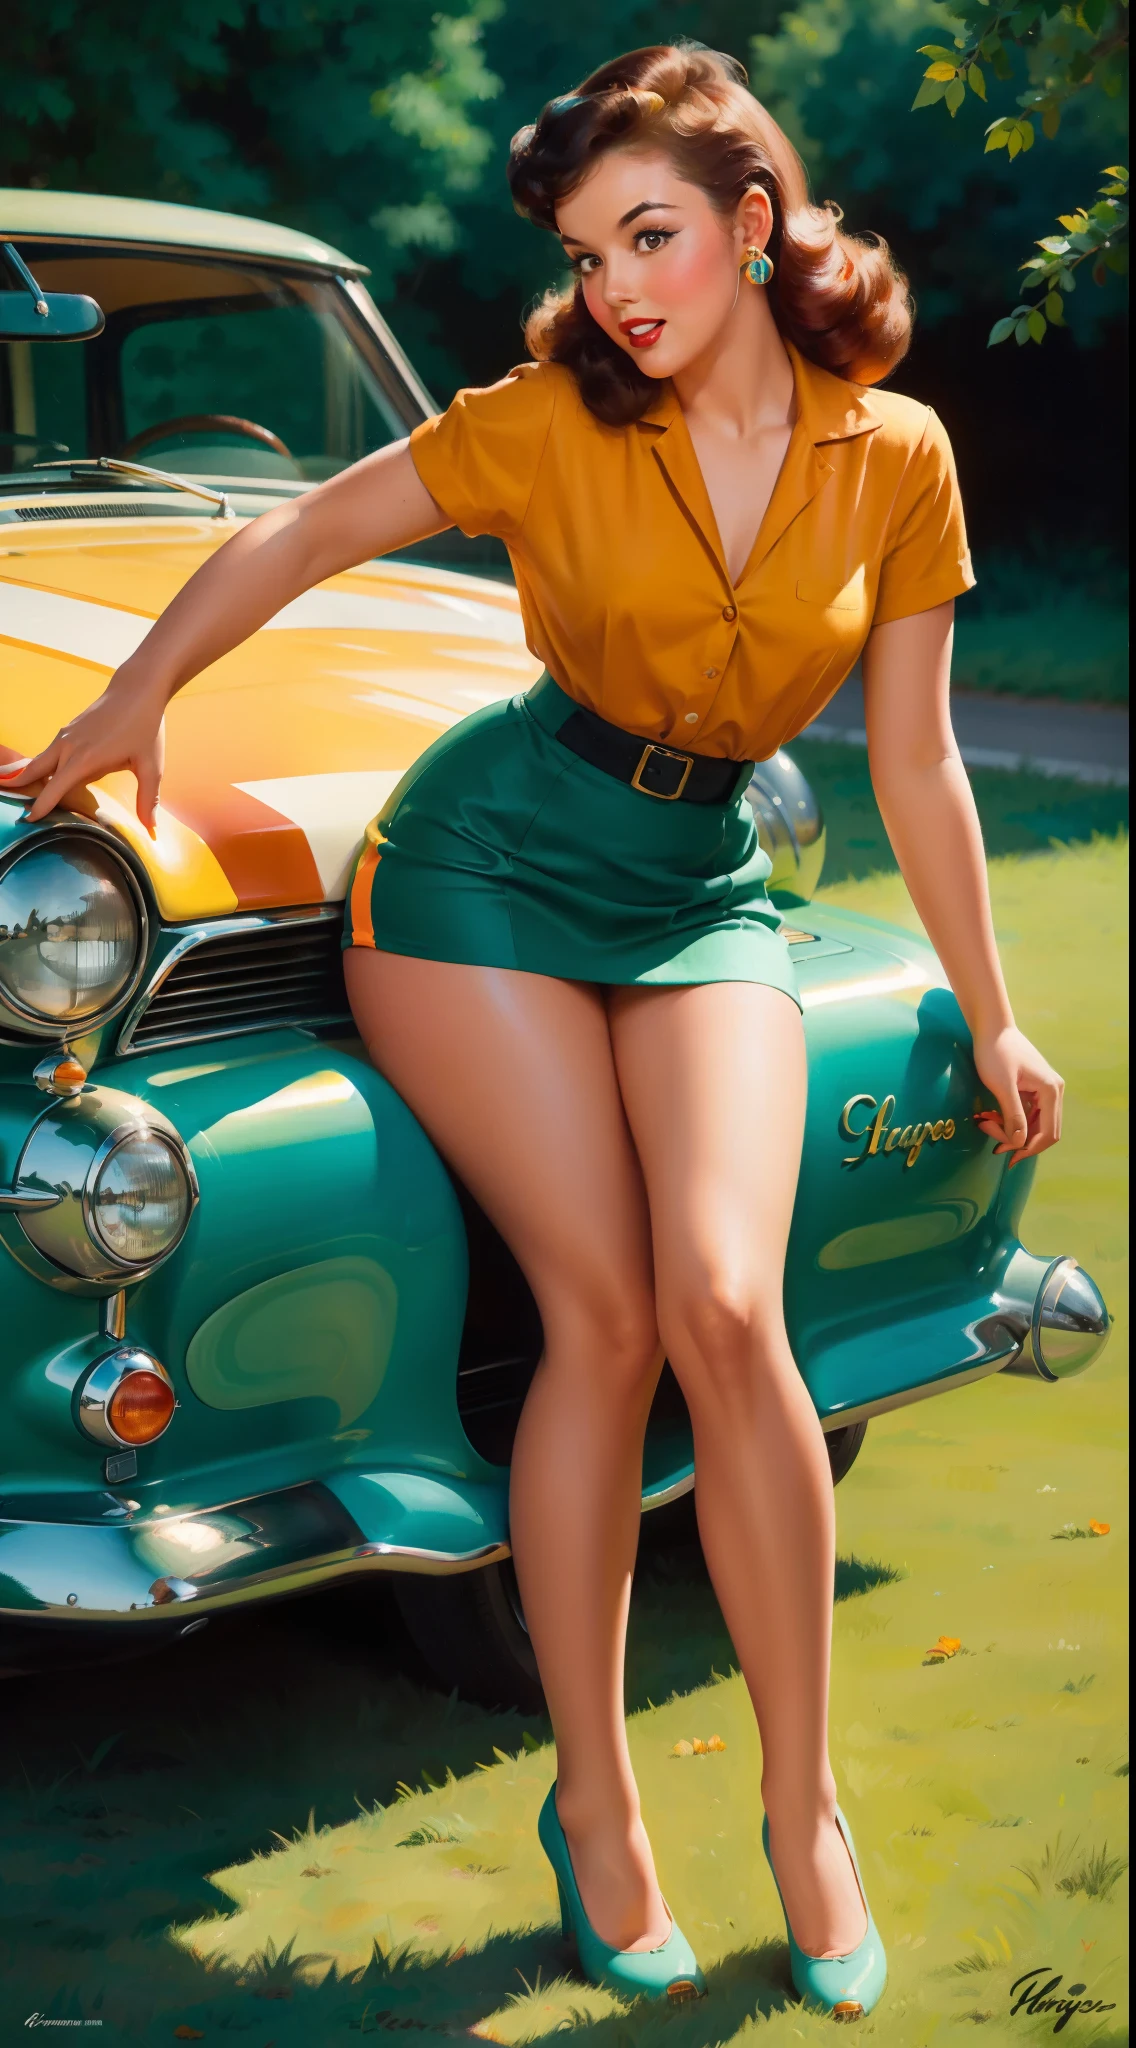 20 Jahre altes Mädchen sitzt auf der Bodenplane, vor einem Retro-Auto, Jahrgang, Retro-Pin-Up-Stil, sexy, Detailliert alles, überrascht, enger Minirock, fließender Rock, Bunt , Farbschema in Orange und Blaugrün, Meisterwerke Kunstwerk, illustriert,